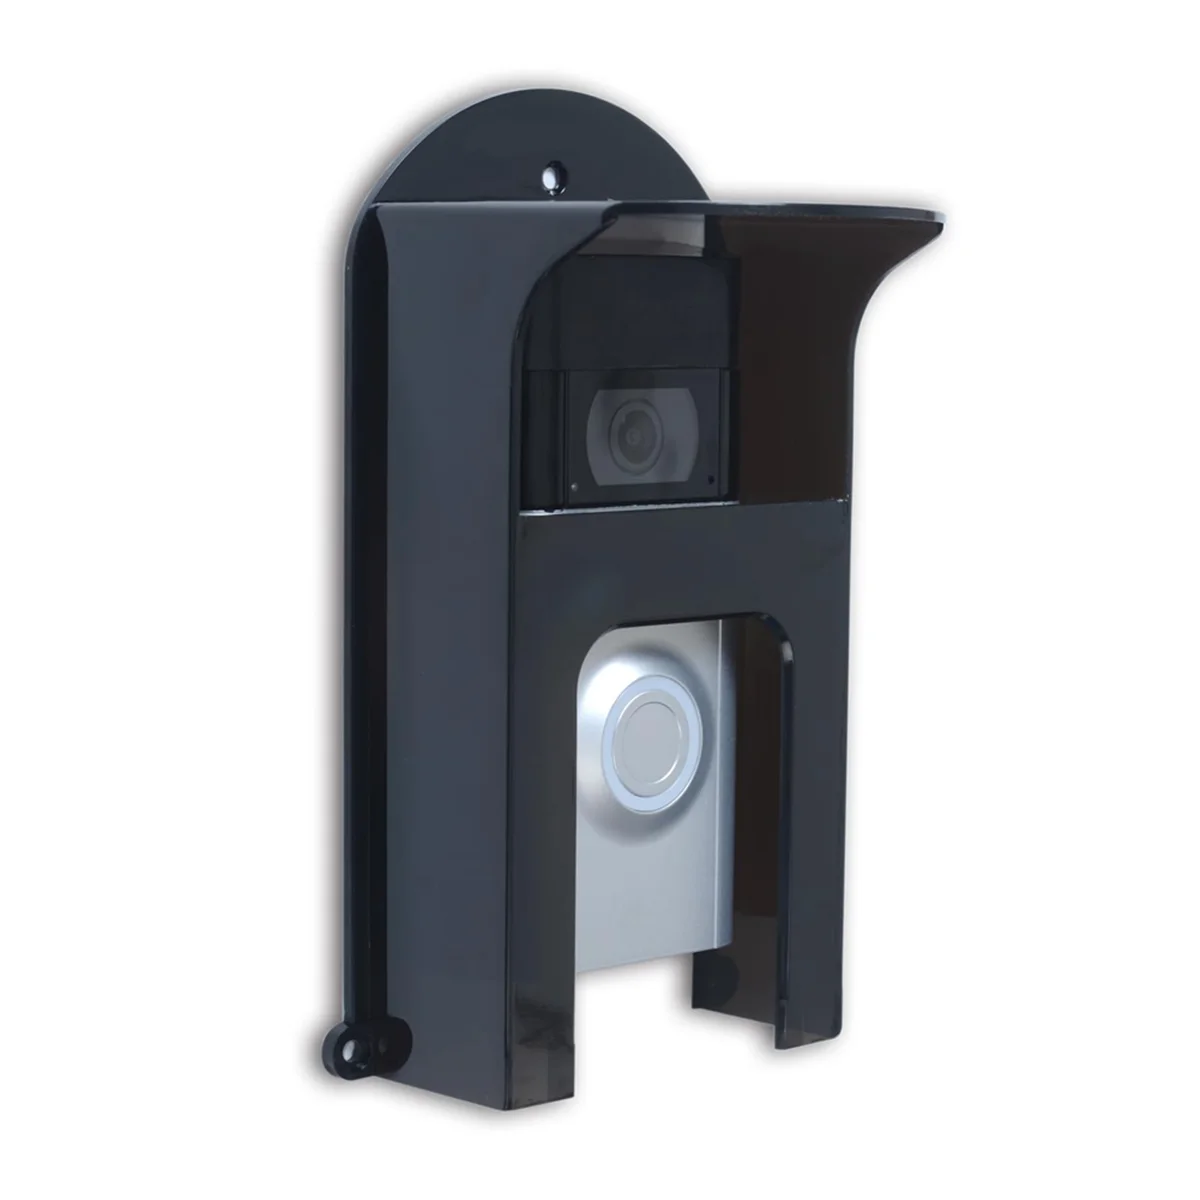 

Black Plastic Doorbell Rain Cover Suitable for Ring Models Doorbell Waterproof Protector Shield Video Doorbells